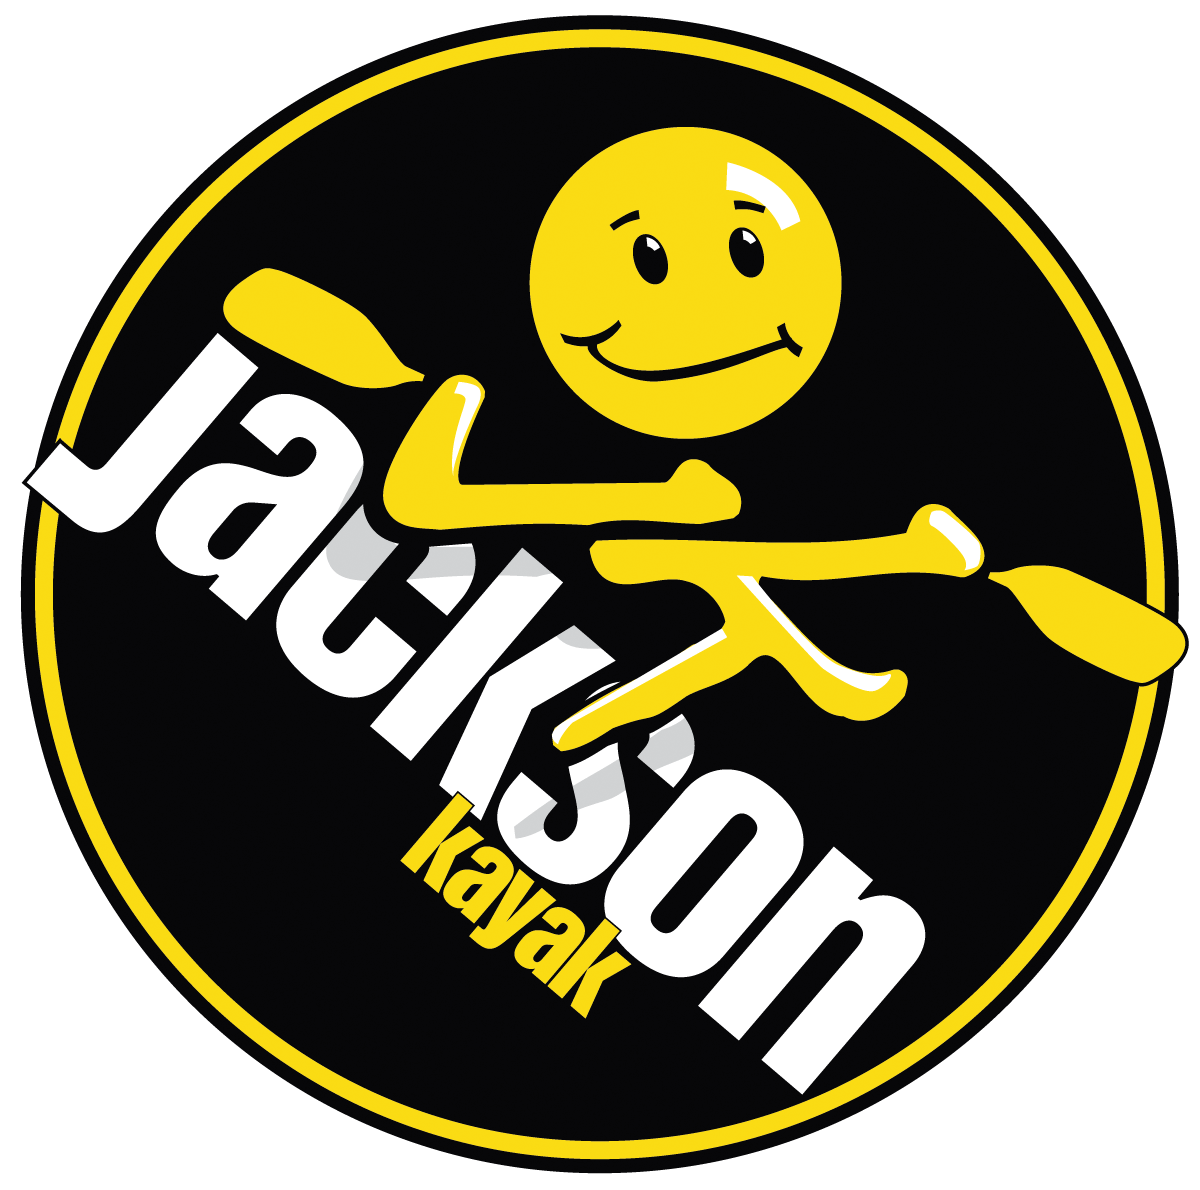 Jackson Logo - Logos - Jackson Kayak